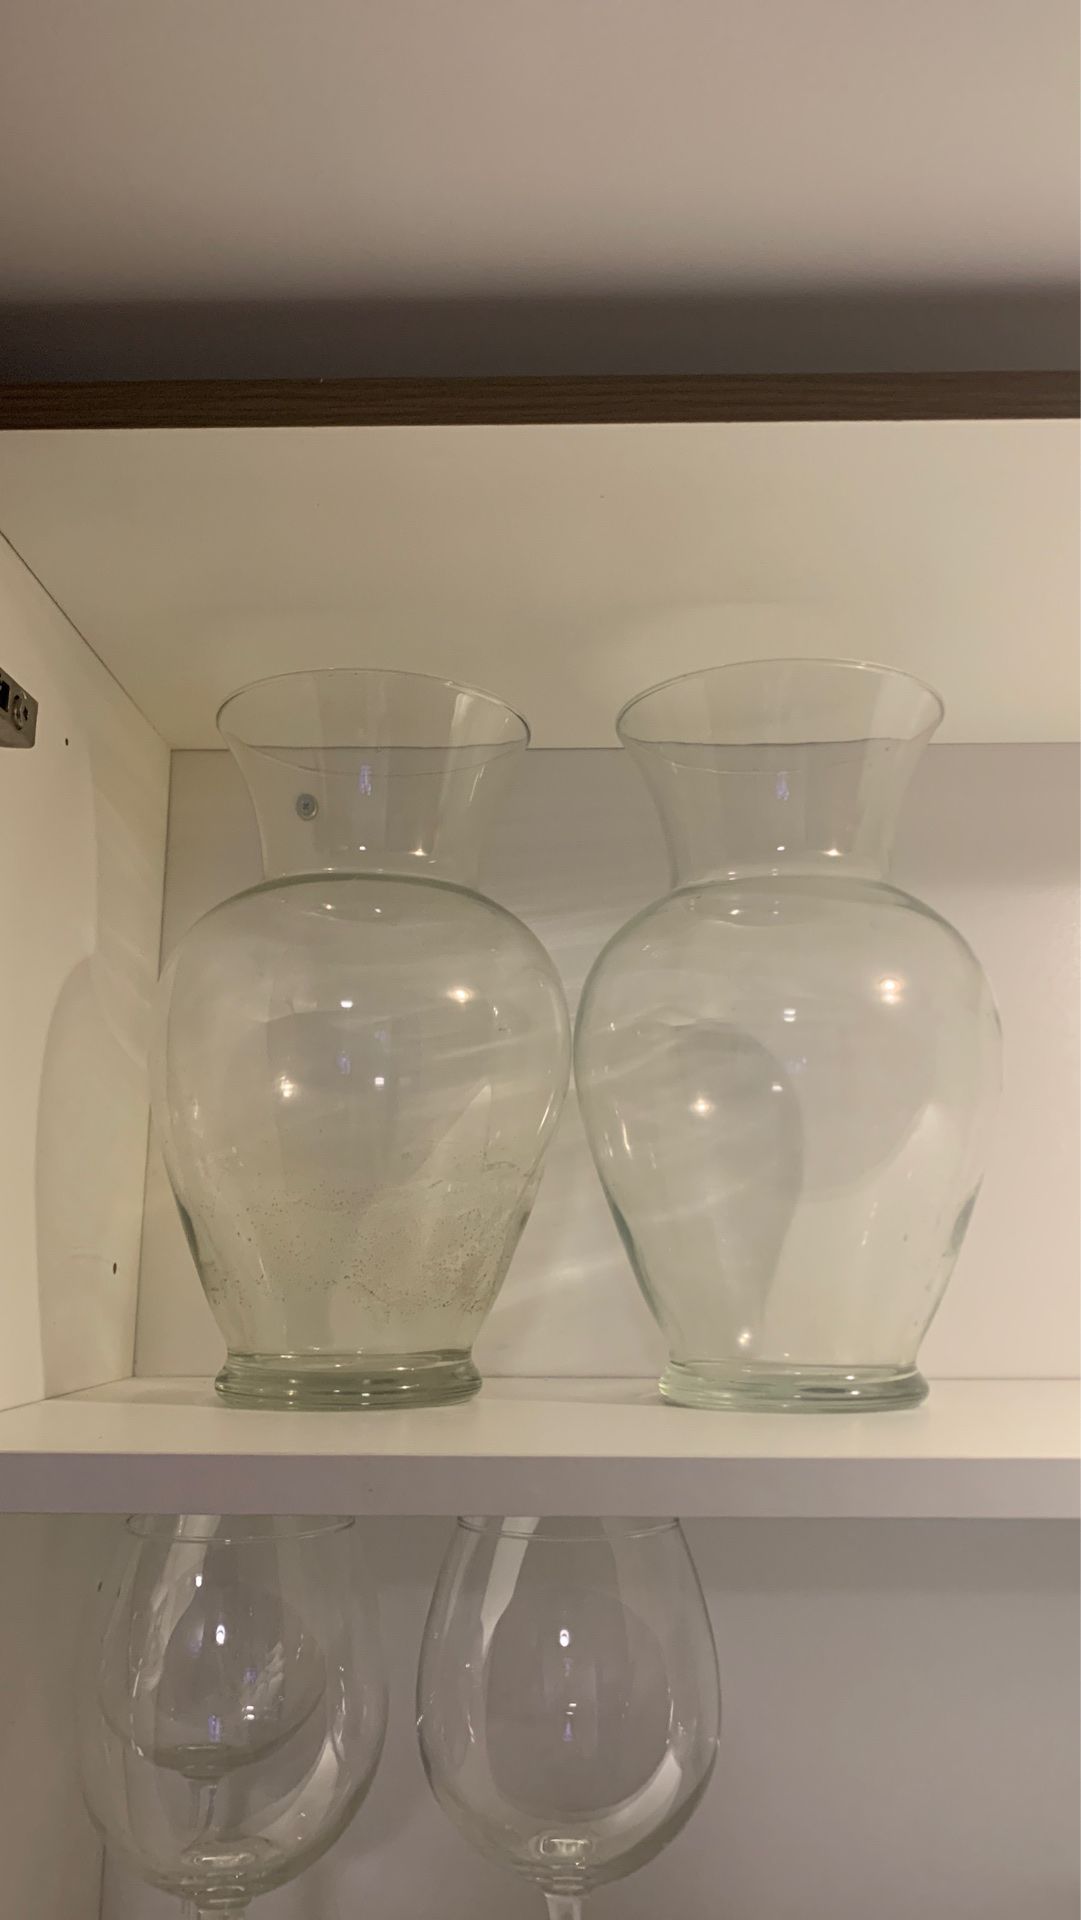 Glass Vase Set